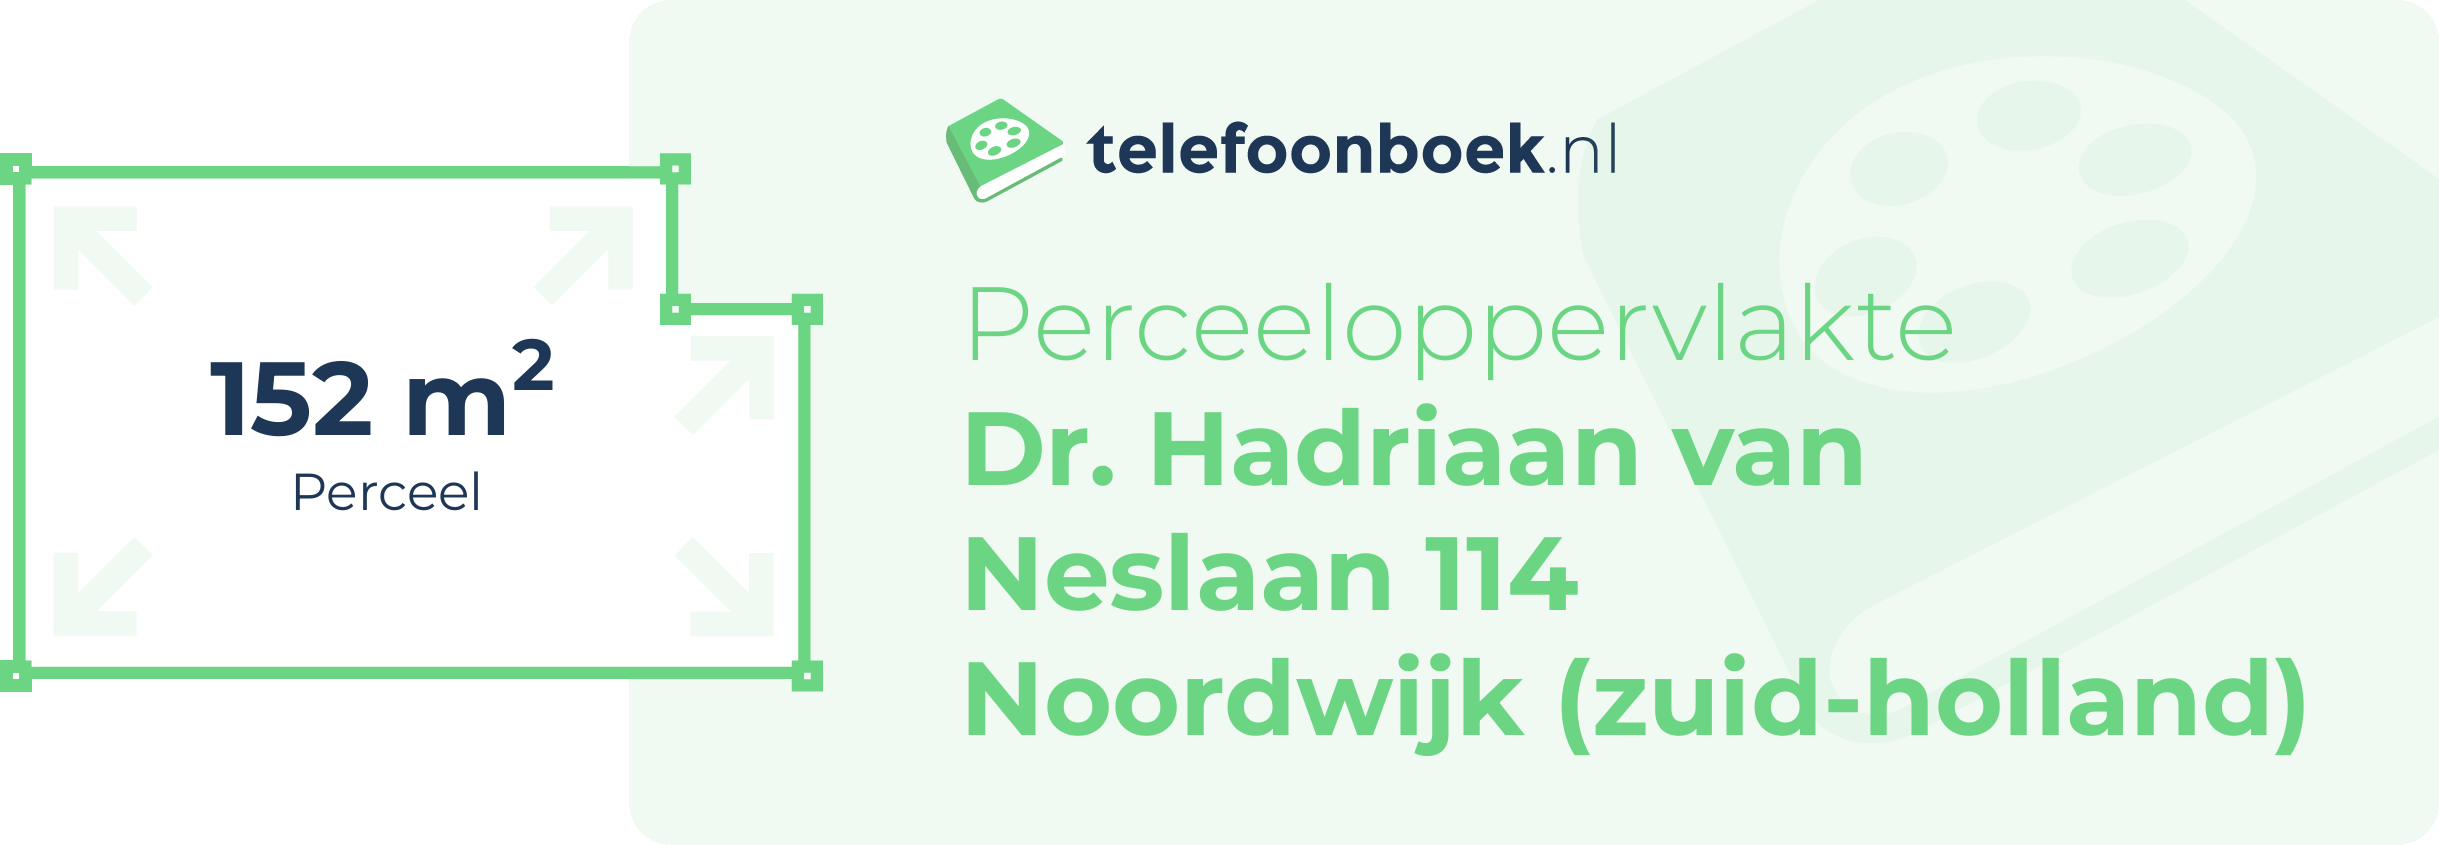 Perceeloppervlakte Dr. Hadriaan Van Neslaan 114 Noordwijk (Zuid-Holland)